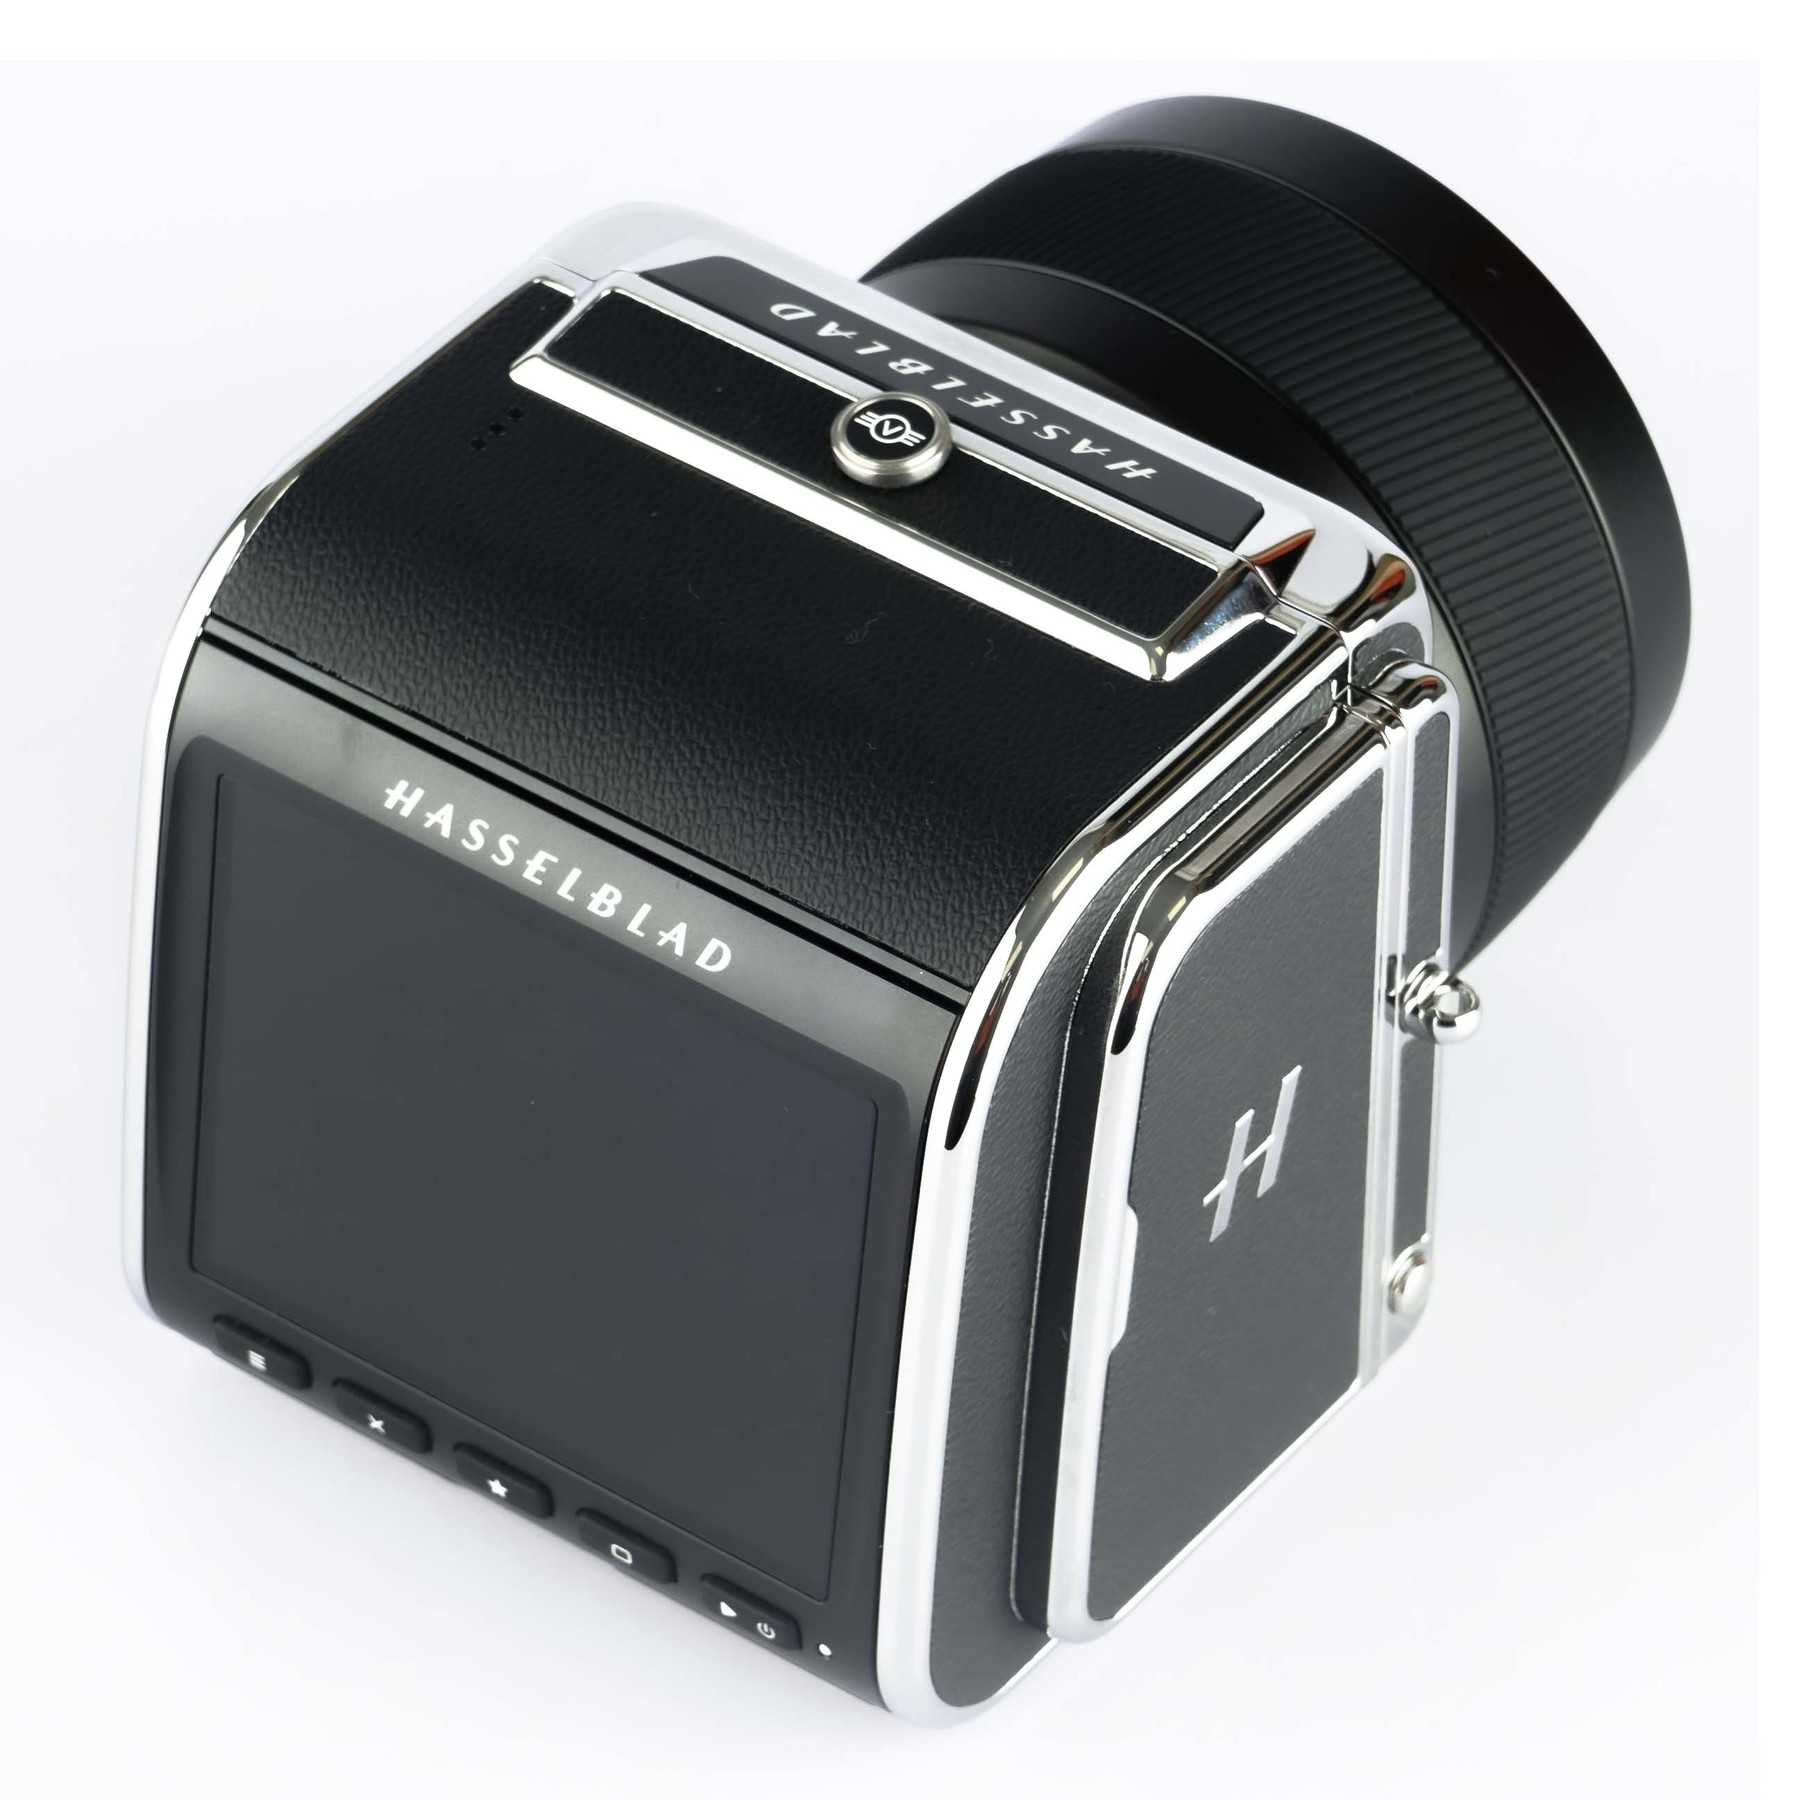 Hasselblad 907X + XCD 45mm f/4 Kit